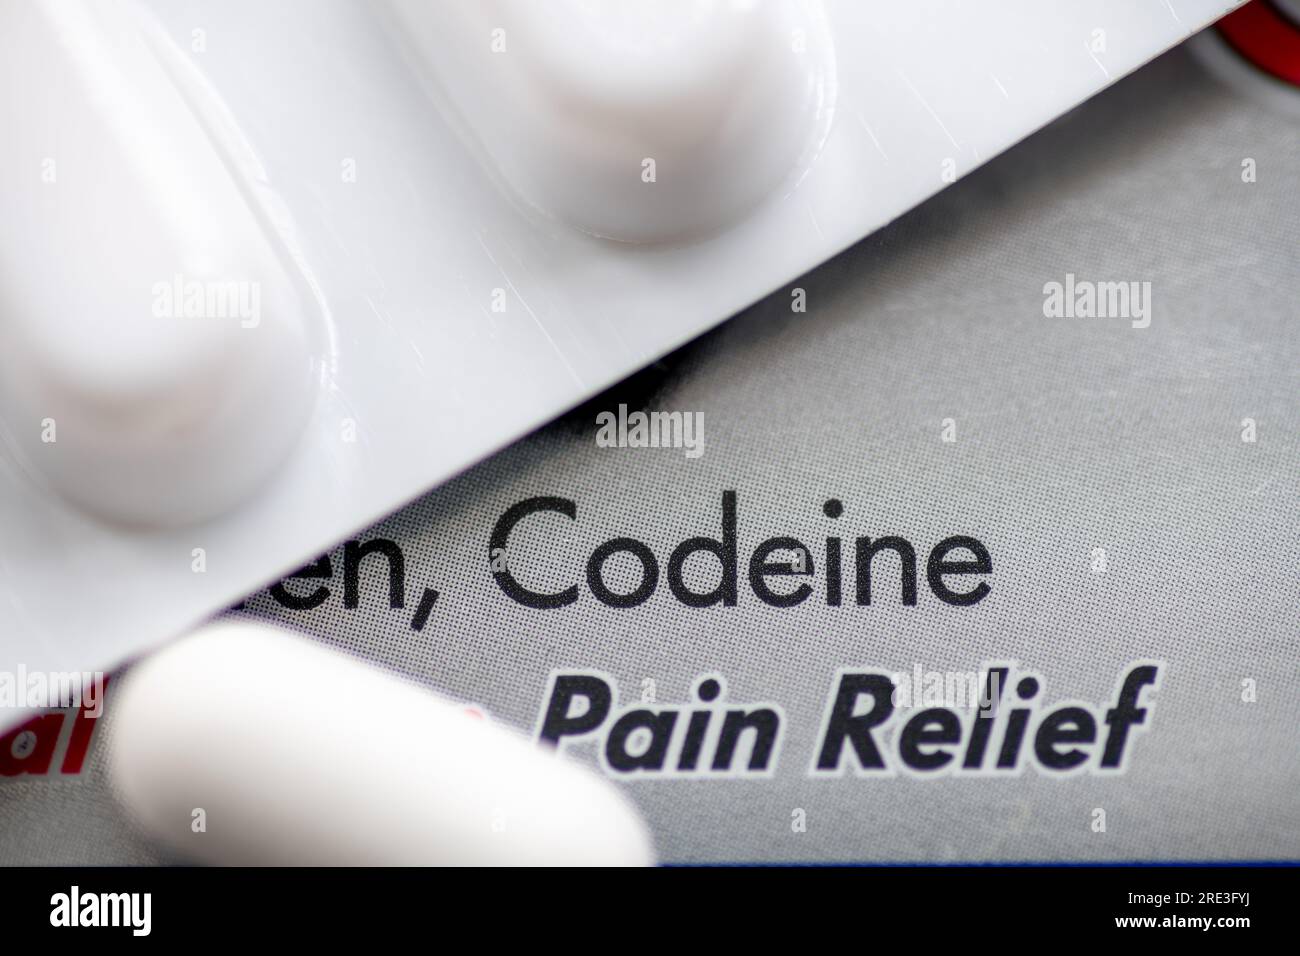 Una scatola di farmaci antidolorifici contenente codeina, un oppioide che crea grande dipendenza. Foto Stock